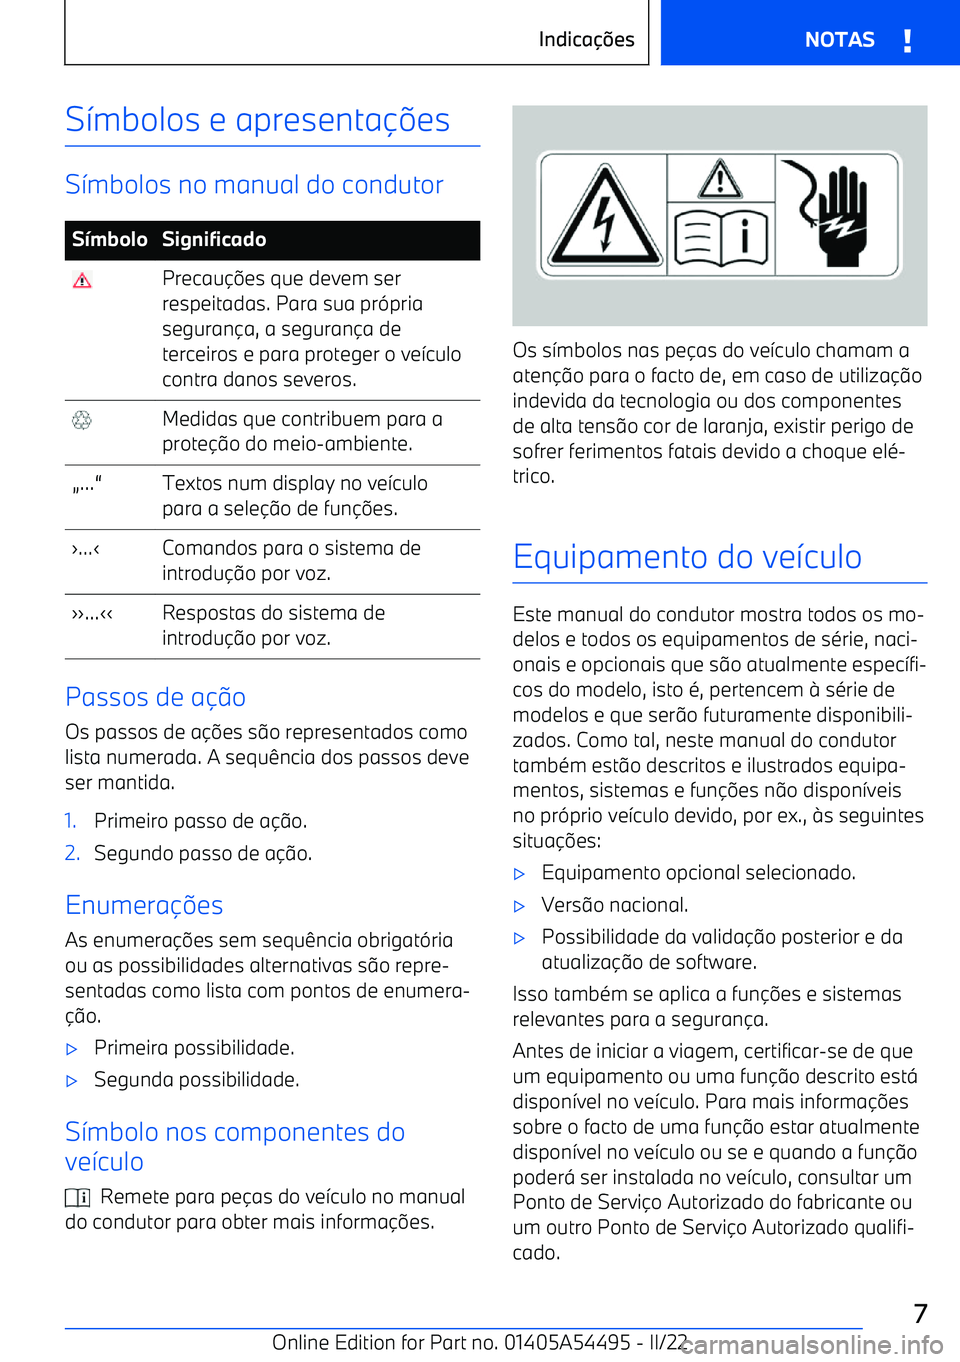 BMW IX 2022  Manual do condutor (in Portuguese) S7mbolos e apresenta